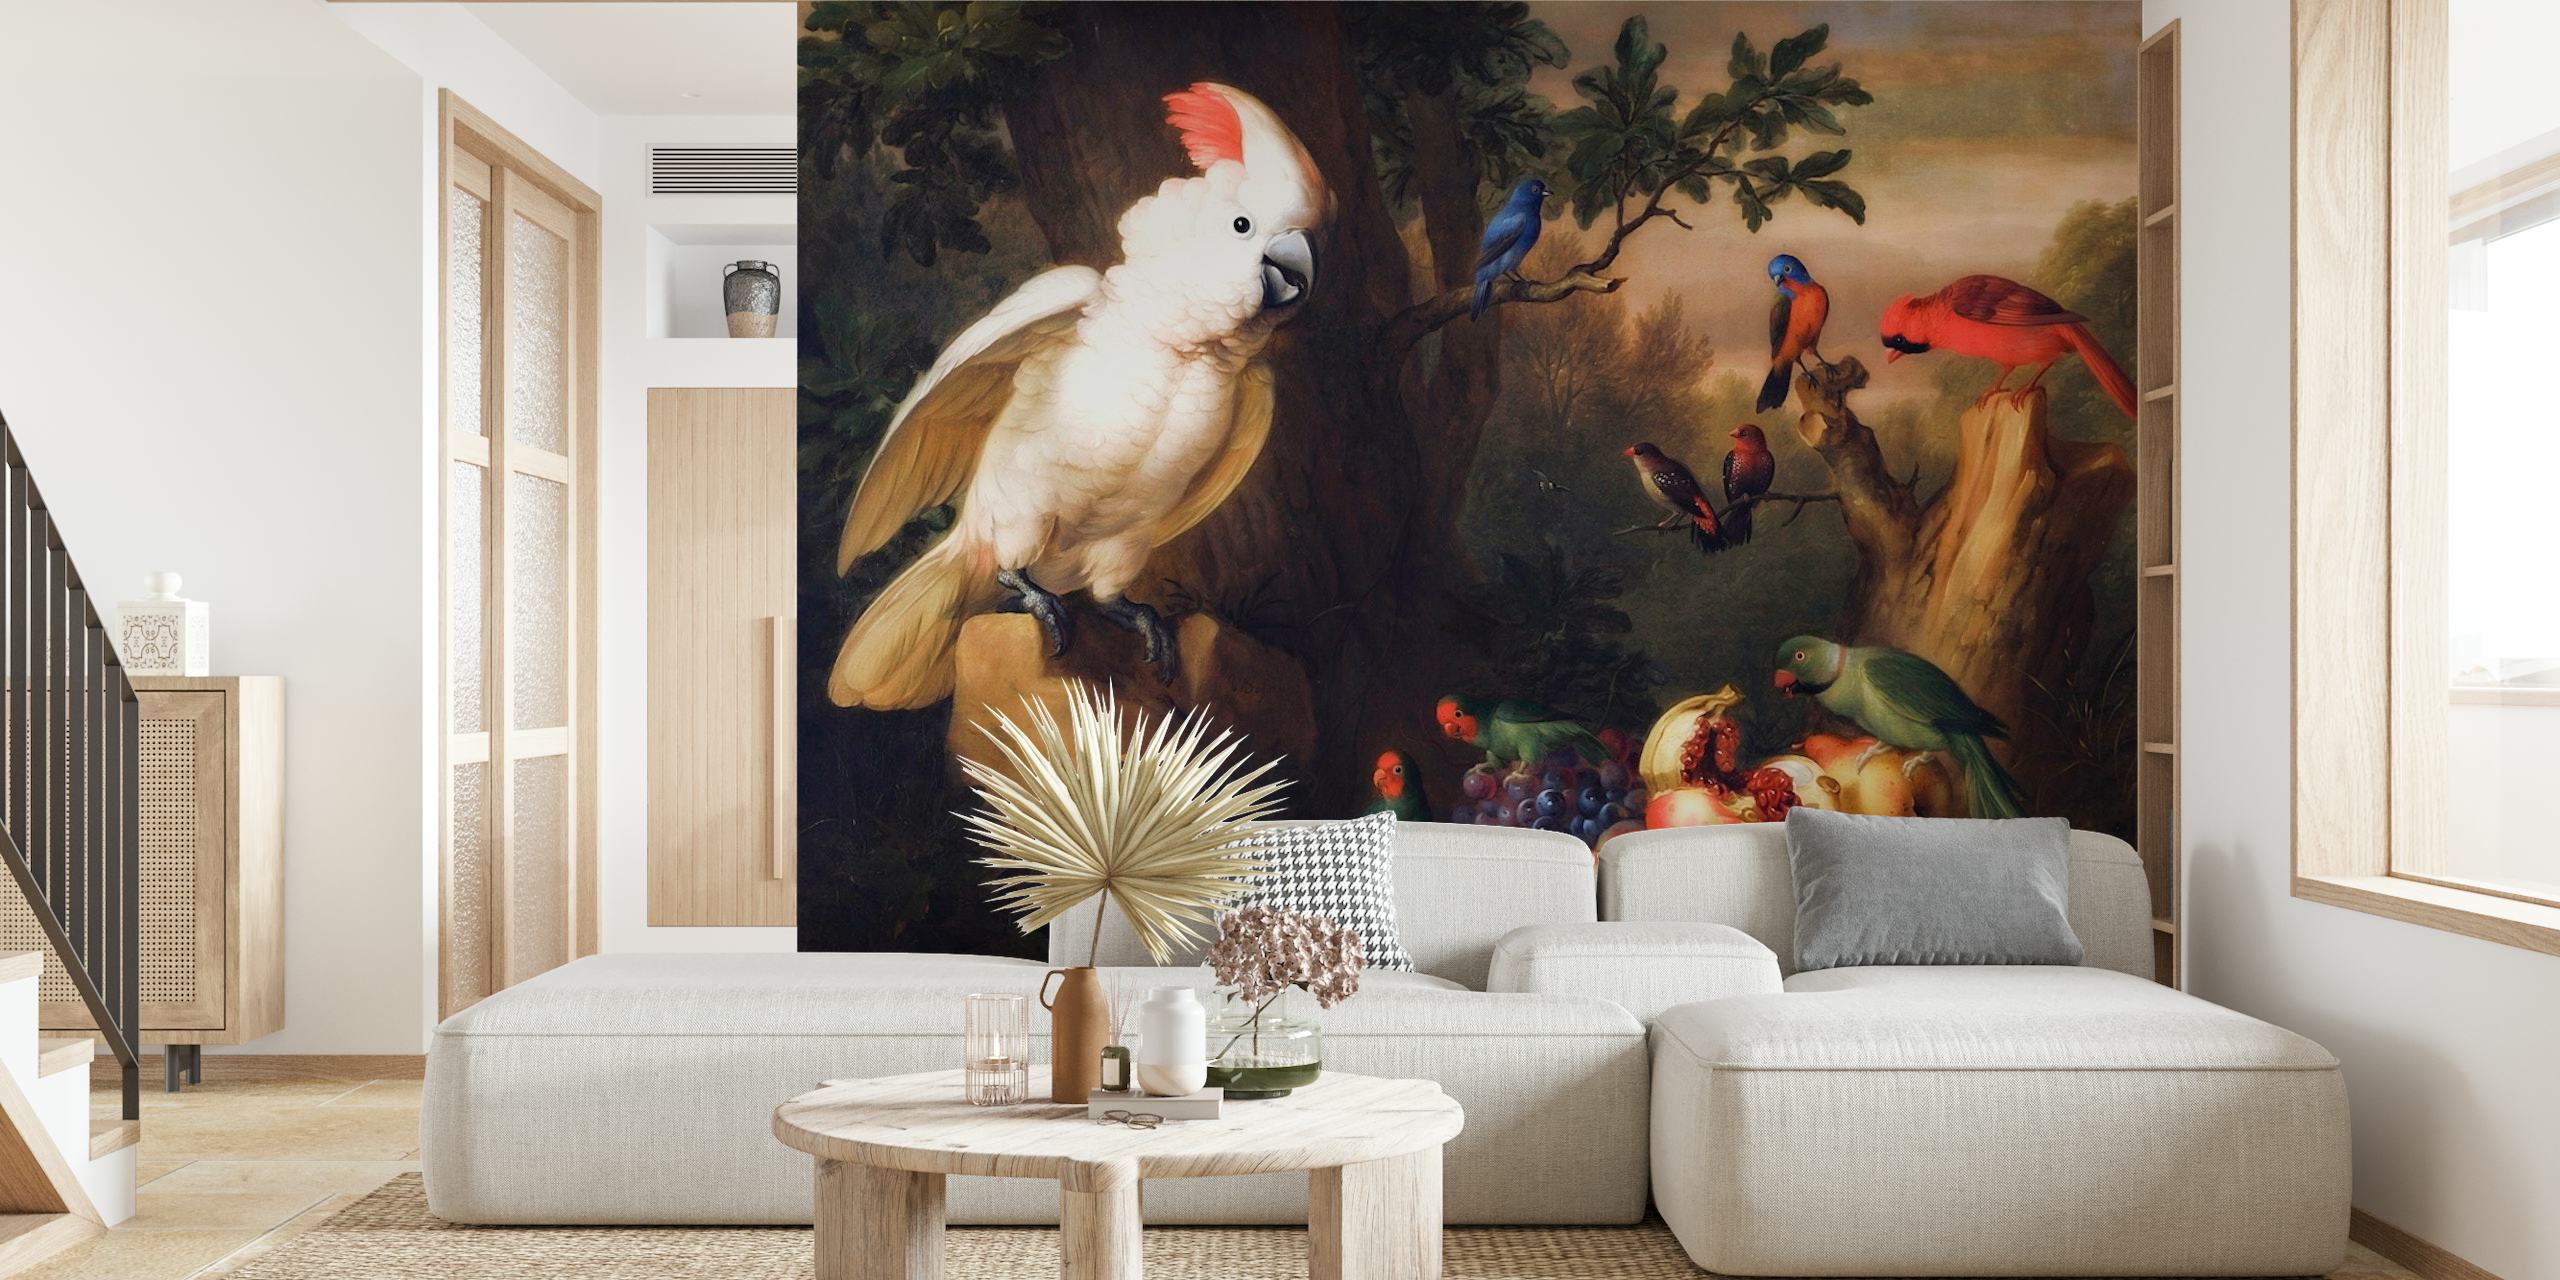 Muurschildering in barokstijl met vintage tropische vogels en weelderig tuinlandschap